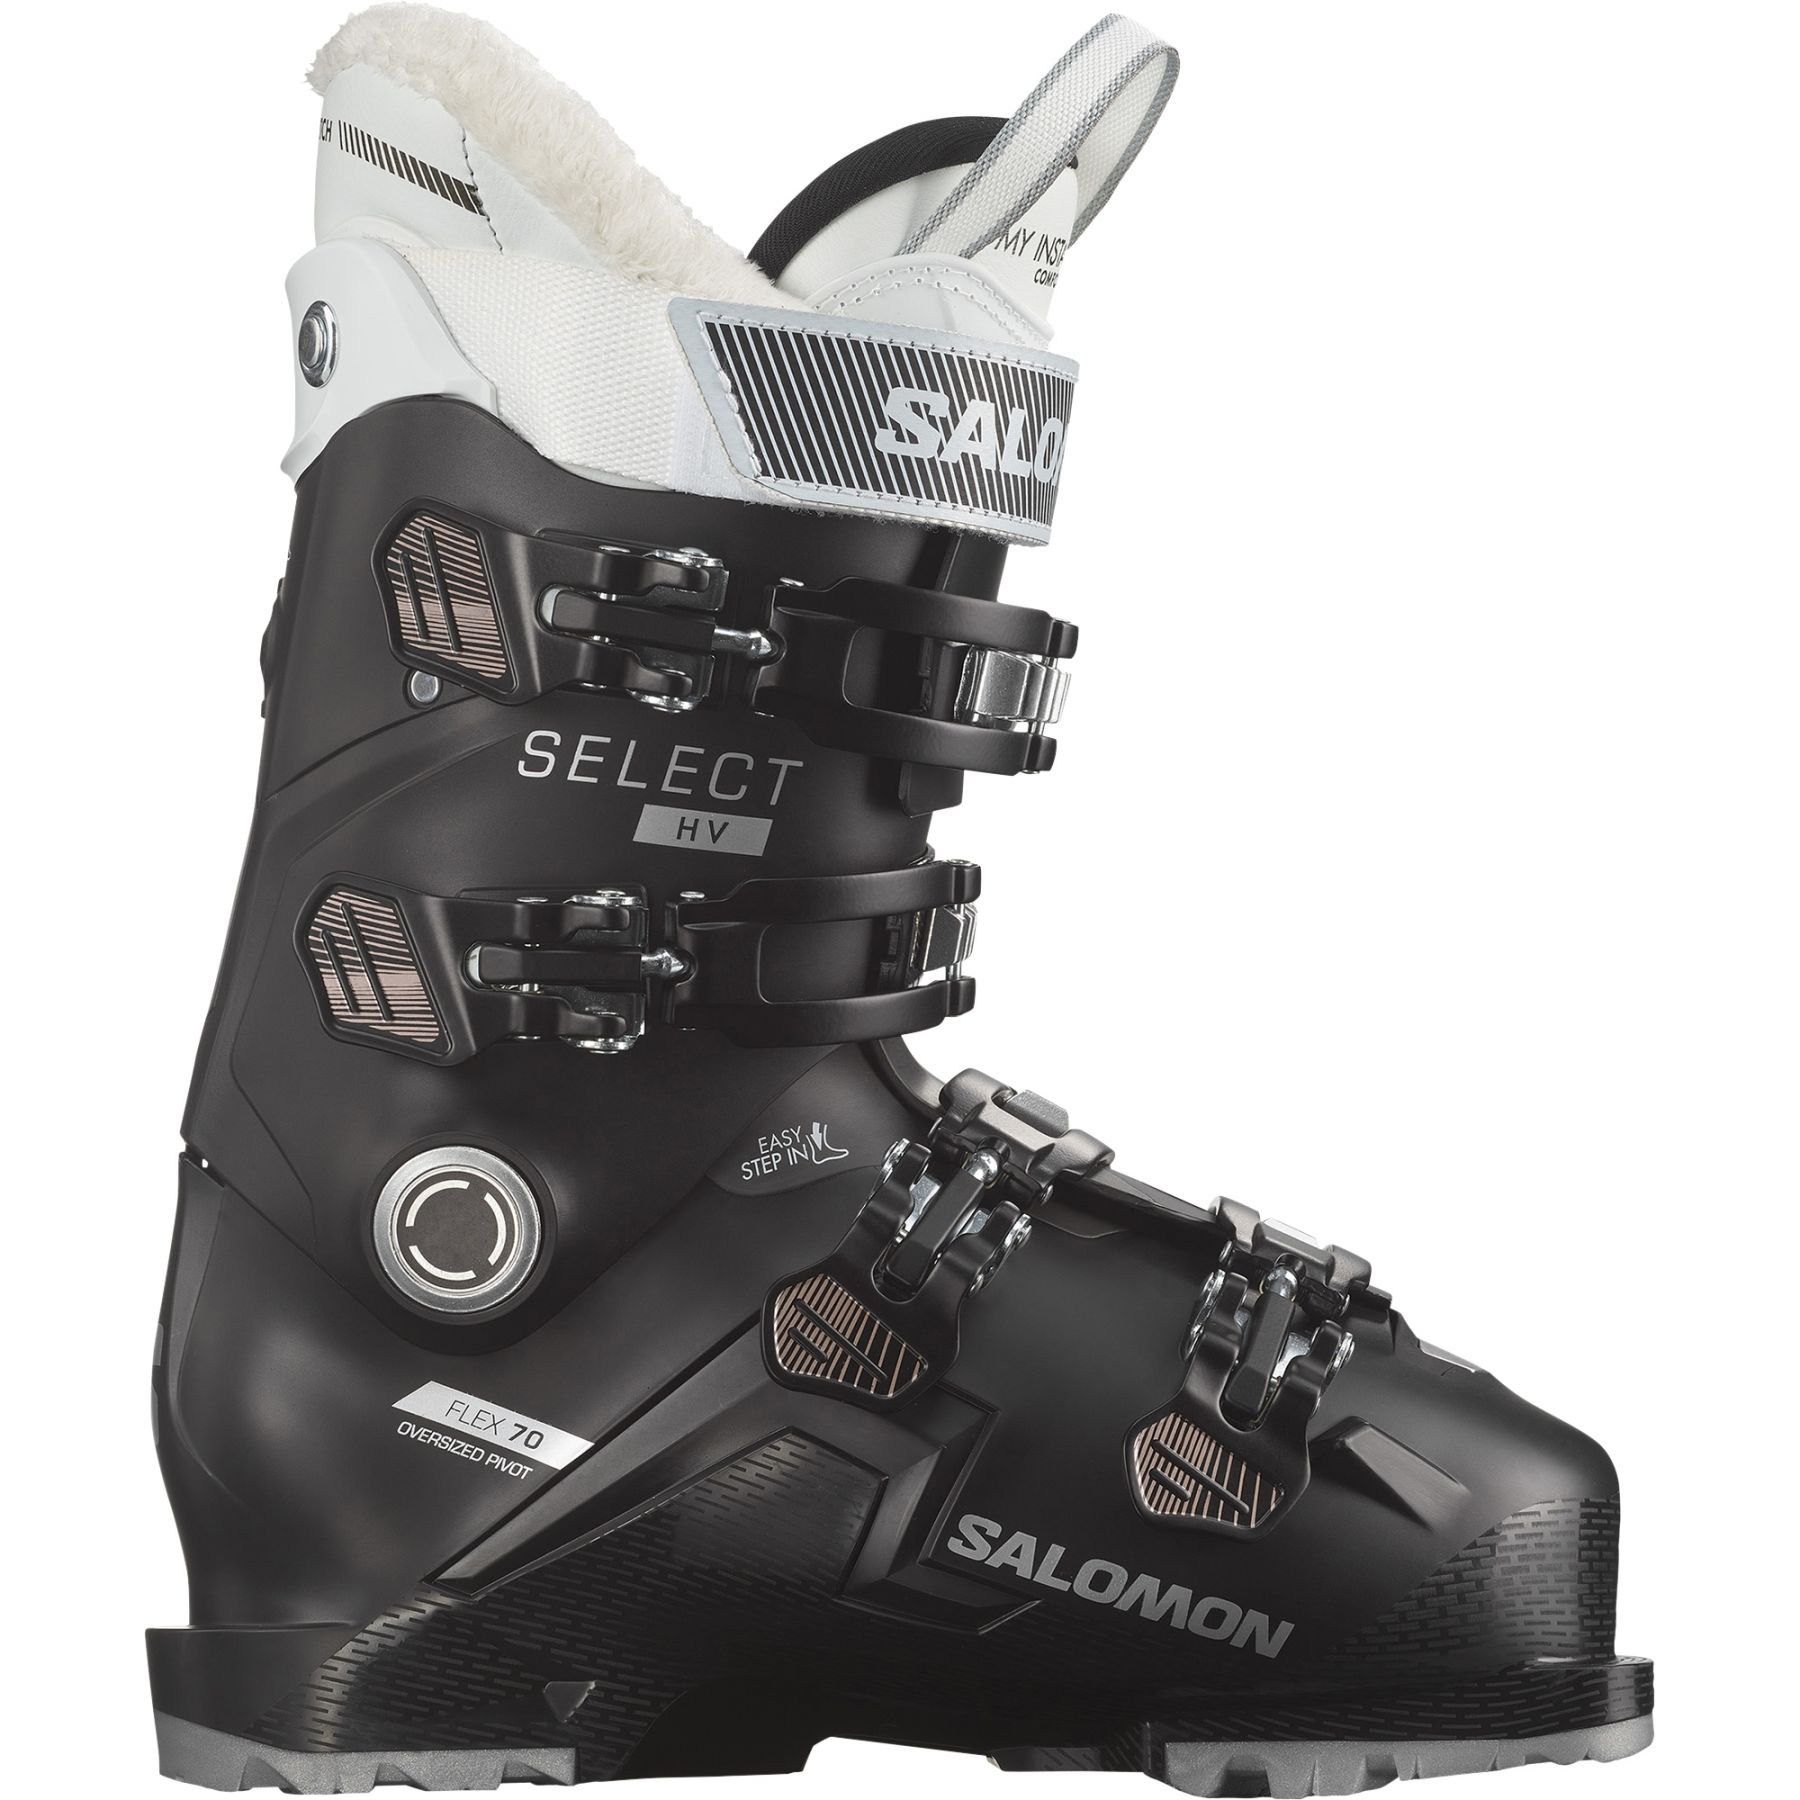 Billede af Salomon Select HV 70 W GW, skistøvler, dame, sort/pink/hvid hos Skisport.dk